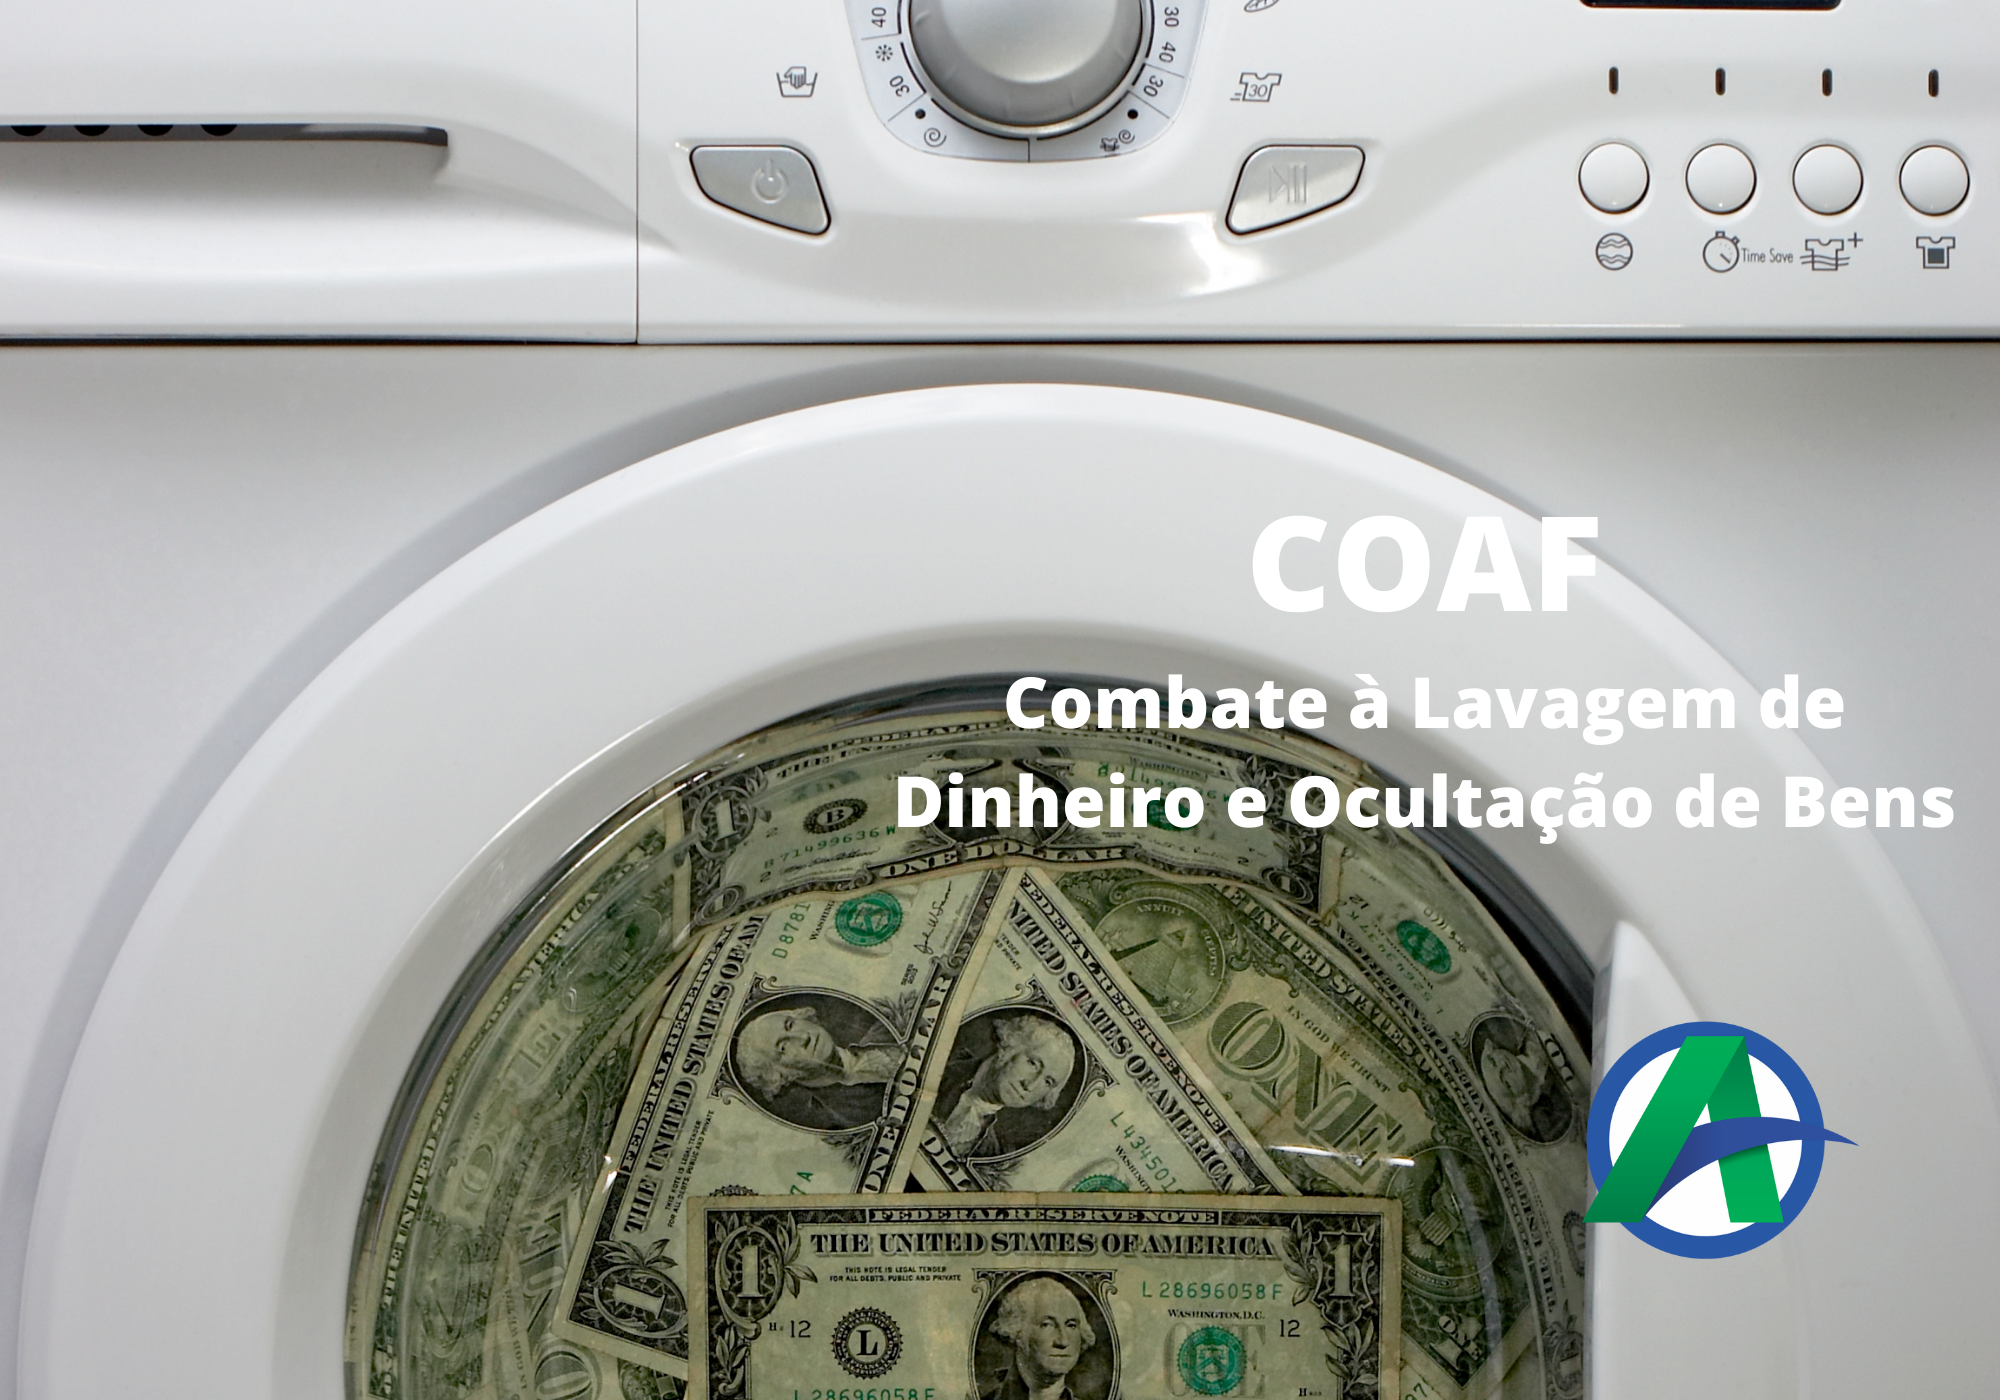 COAF e o combate à lavagem de dinheiro.